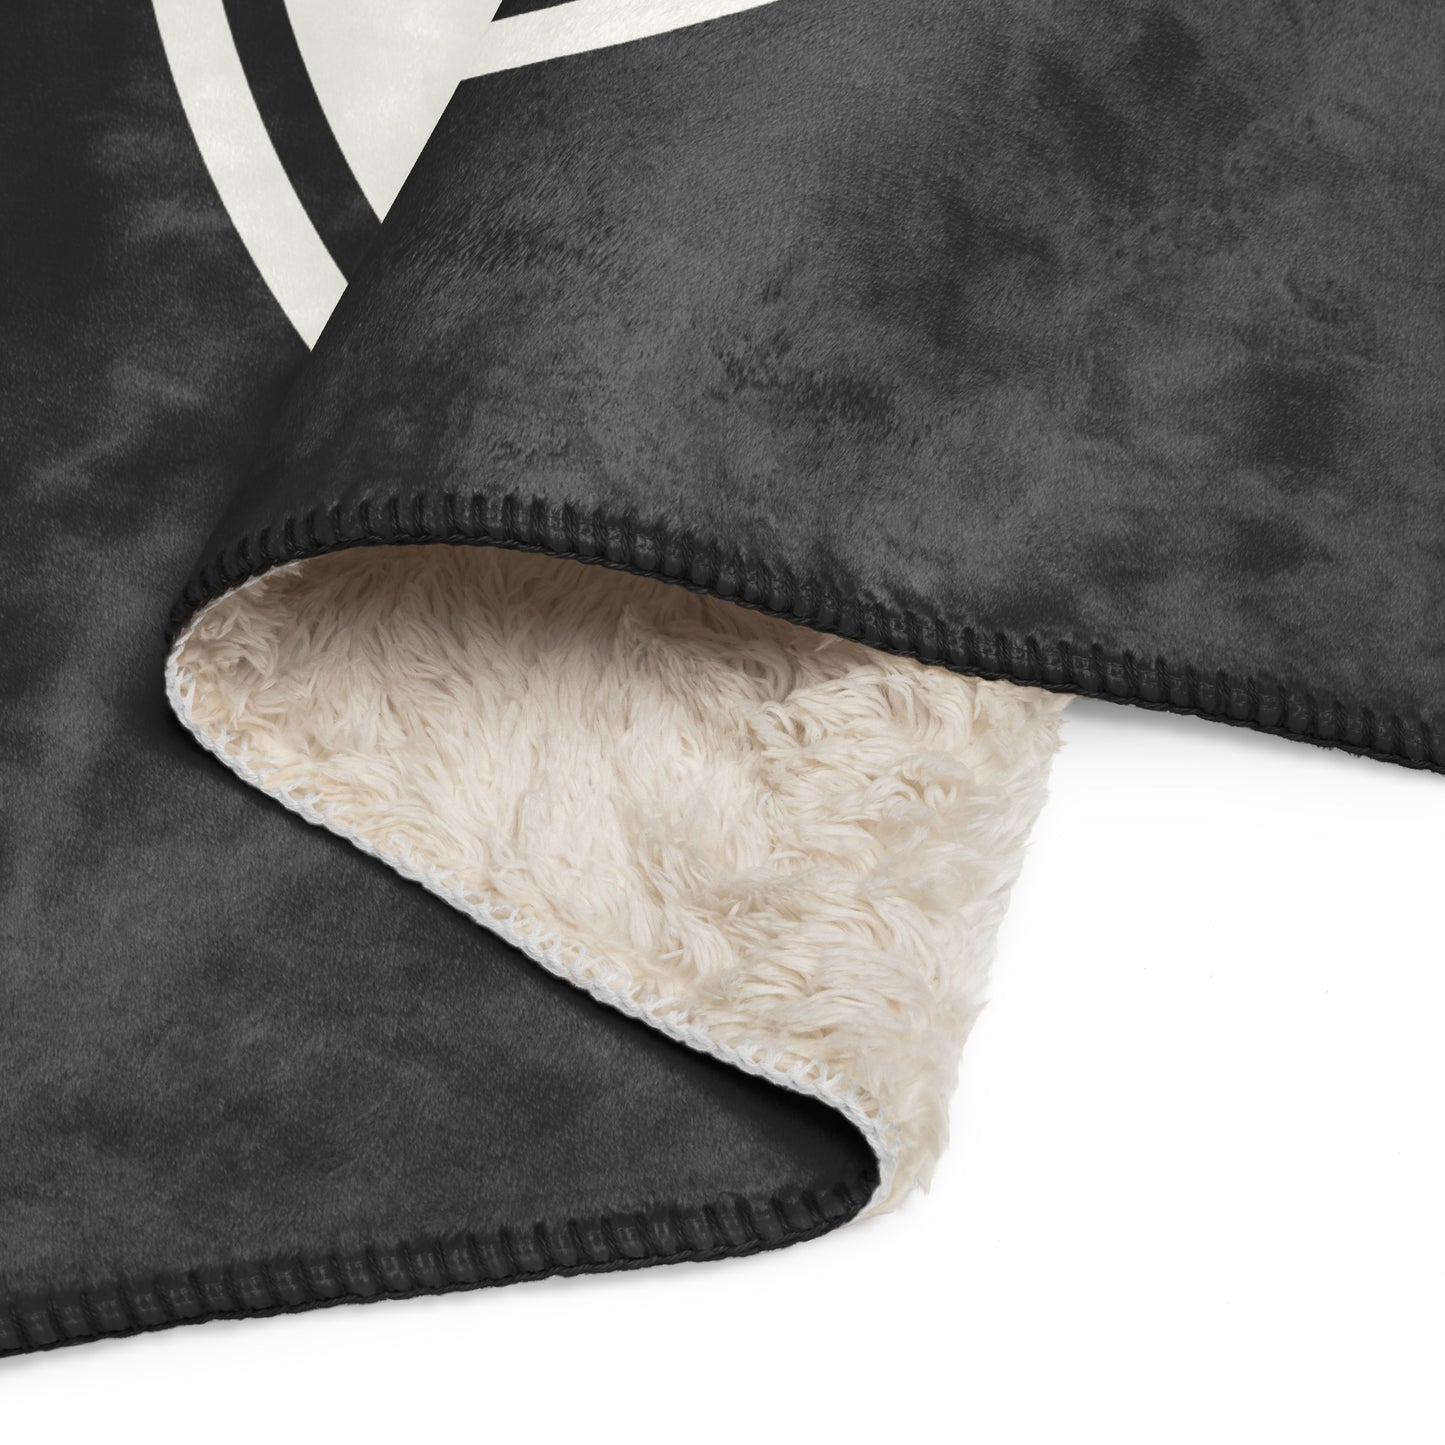 Unique Travel Gift Sherpa Blanket - White Oval • BNA Nashville • YHM Designs - Image 08